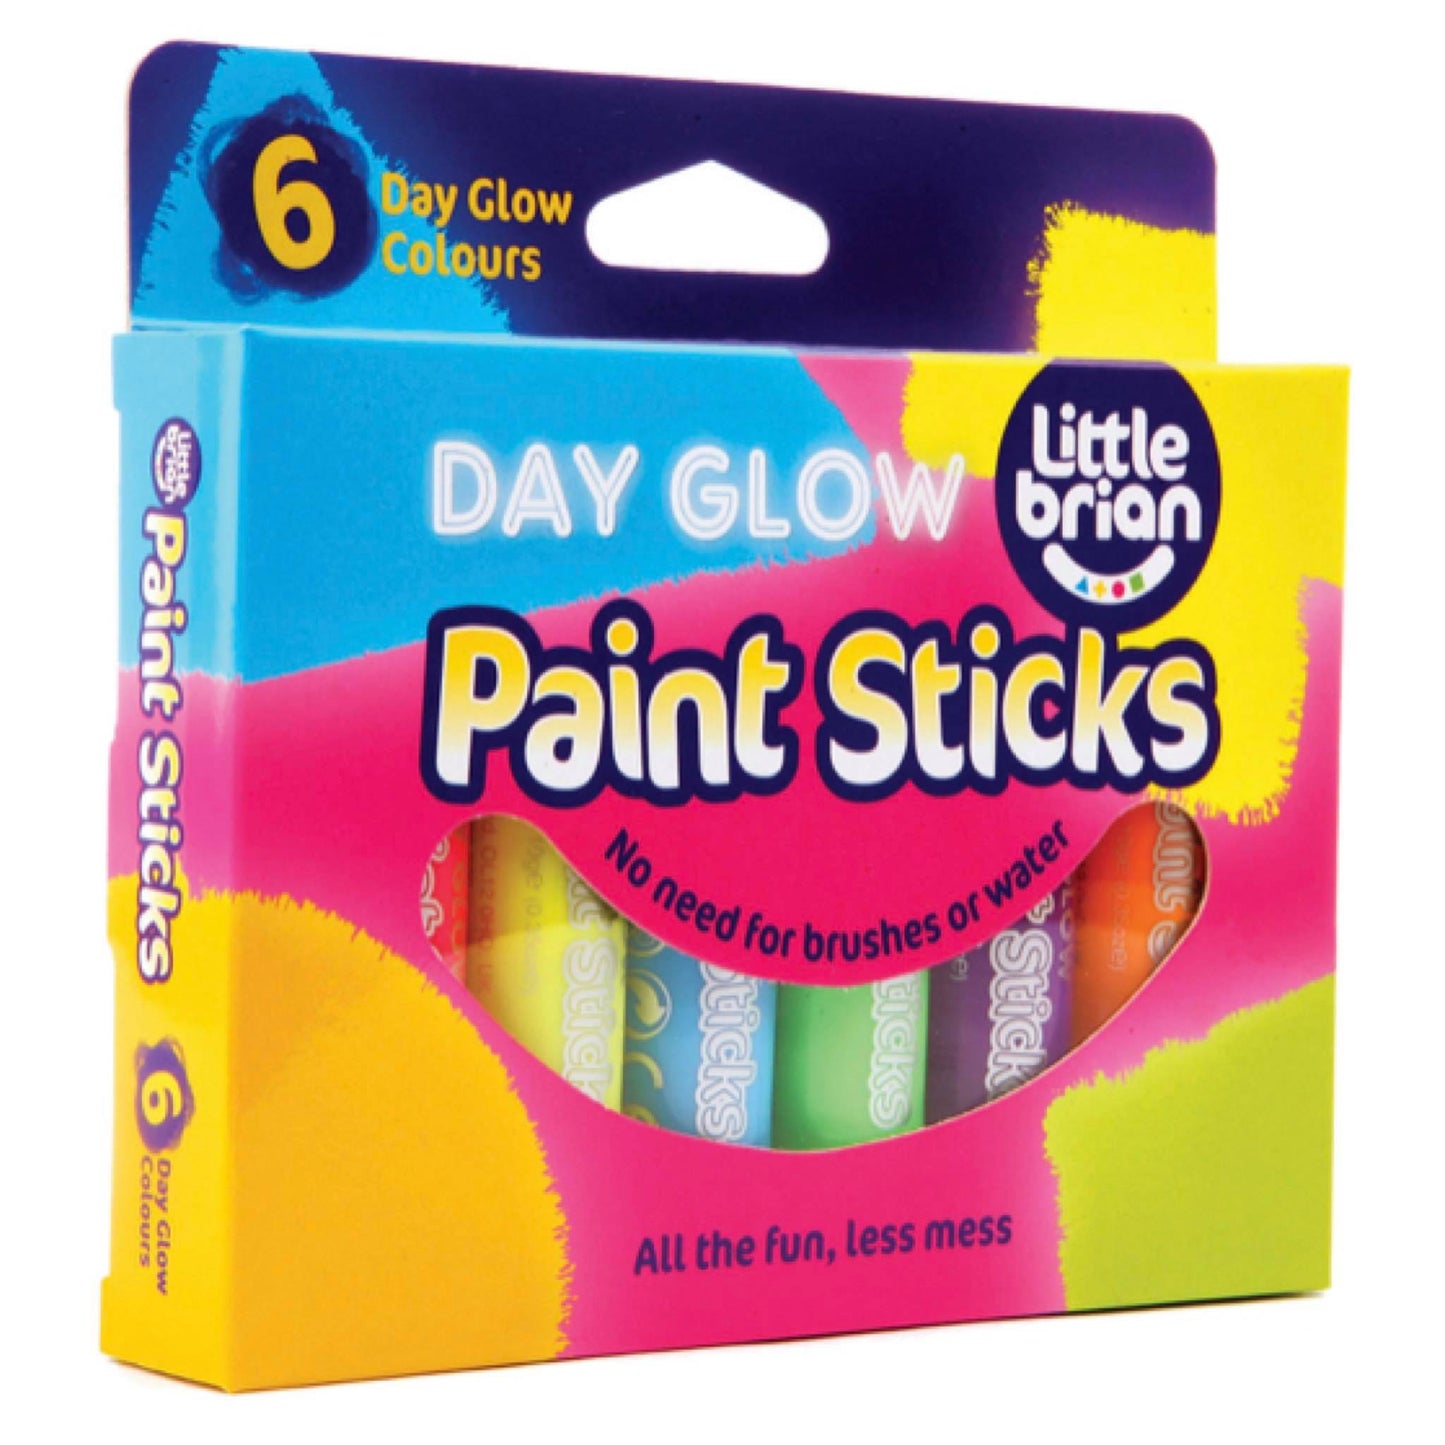 Paint Sticks Day Glow